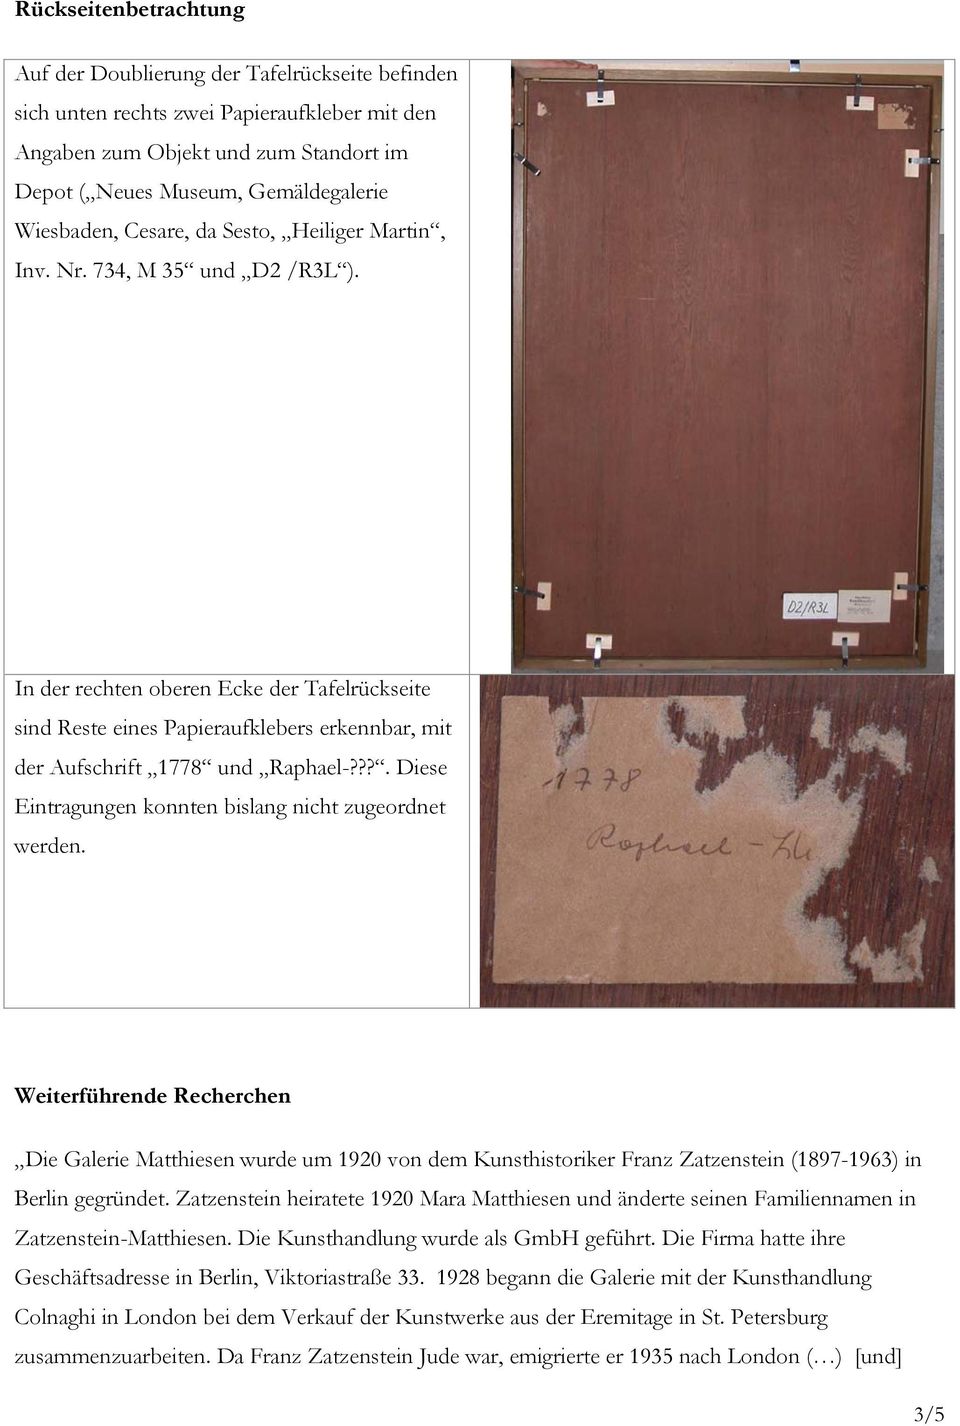 In der rechten oberen Ecke der Tafelrückseite sind Reste eines Papieraufklebers erkennbar, mit der Aufschrift 1778 und Raphael-???. Diese Eintragungen konnten bislang nicht zugeordnet werden.